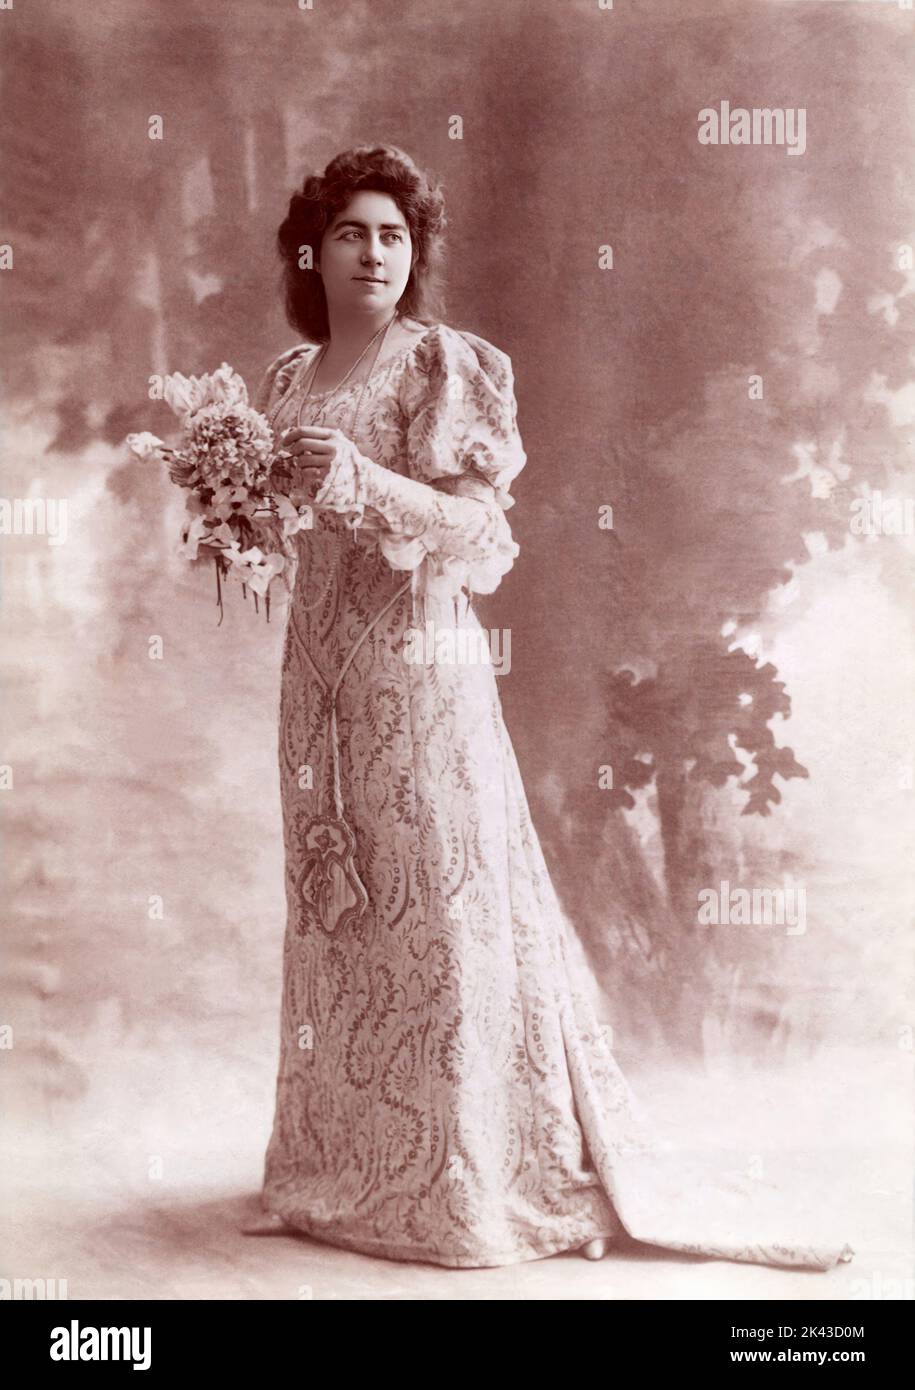 1895 CA , Paris , FRANCE : la célèbre chanteuse d'opéra française LOUISE GRANDJEAN ( 1870 - 1934 ) . Soprano opératrice qui a été particulièrement admirée pour ses représentations des héroïnes de Richard Wagner et Giuseppe Verdi . Elle a commencé sa carrière à Paris en 1894 où elle est devenue une chanteuse populaire et active jusqu'en 1911. Elle est également apparue régulièrement en Allemagne au cours de la première décennie du XXe siècle avec un grand succès. Photographe inconnu . - BELLE EPOQUE - OPERA LIRICA - DIVA - DIVINA - OPERA LIRICA - CANTANTE - '800 - 800 -- ARCHIVIO GBB Banque D'Images